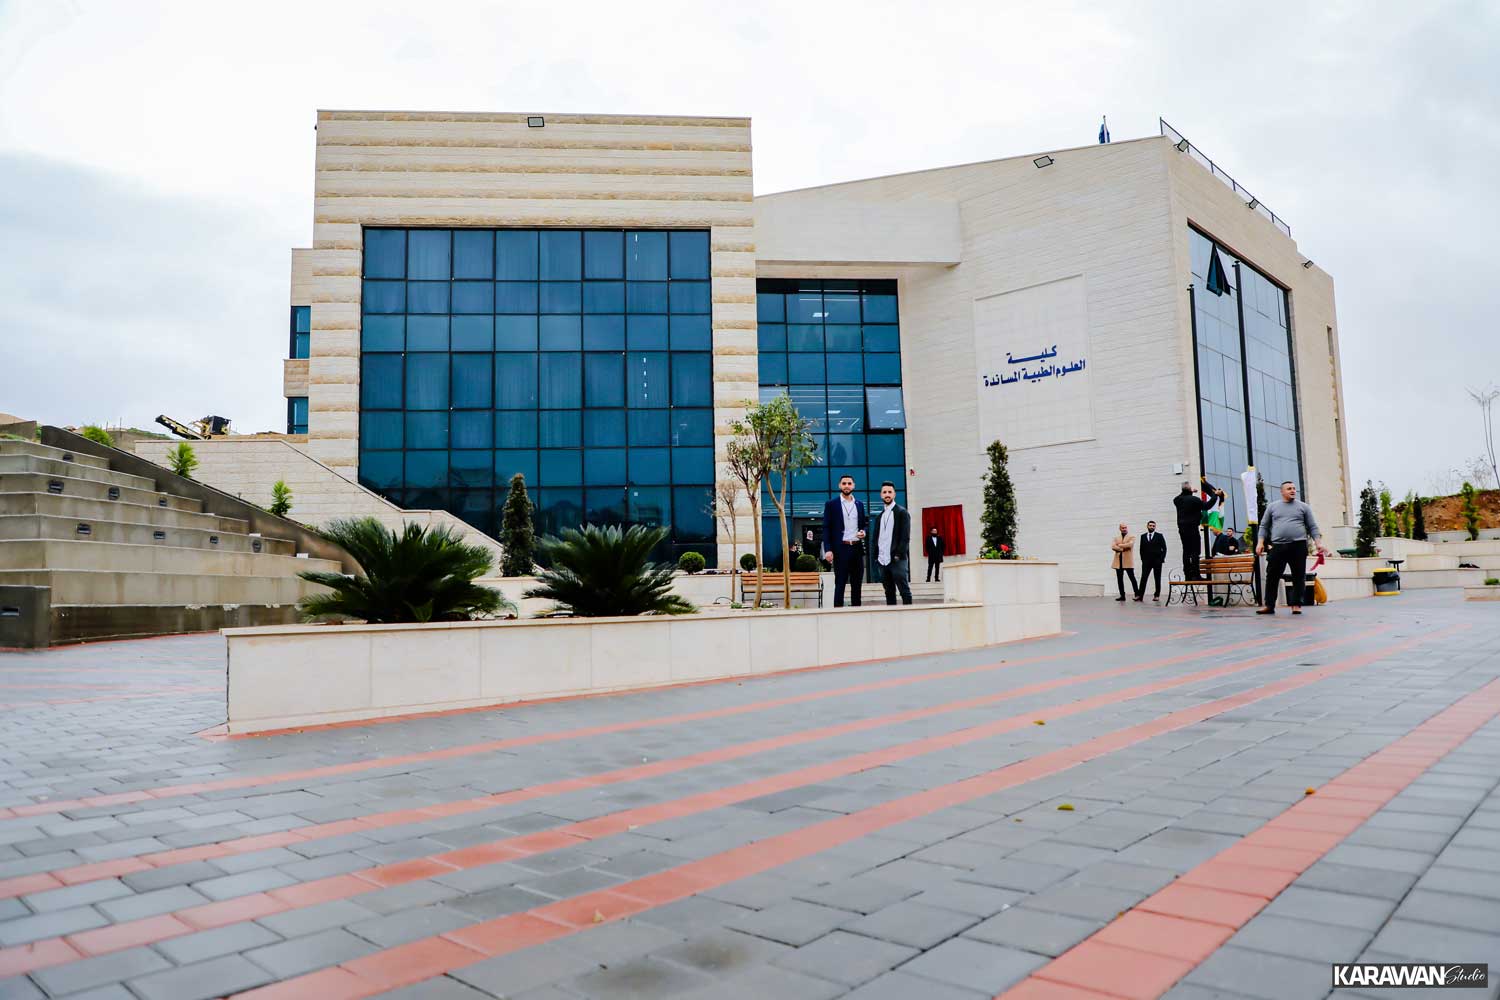 5N5A0131 - جامعة فلسطين الأهلية تحتفل بافتتاح مبنى كلية العلوم الطبية المساندة في الحرم الجامعي الجديد